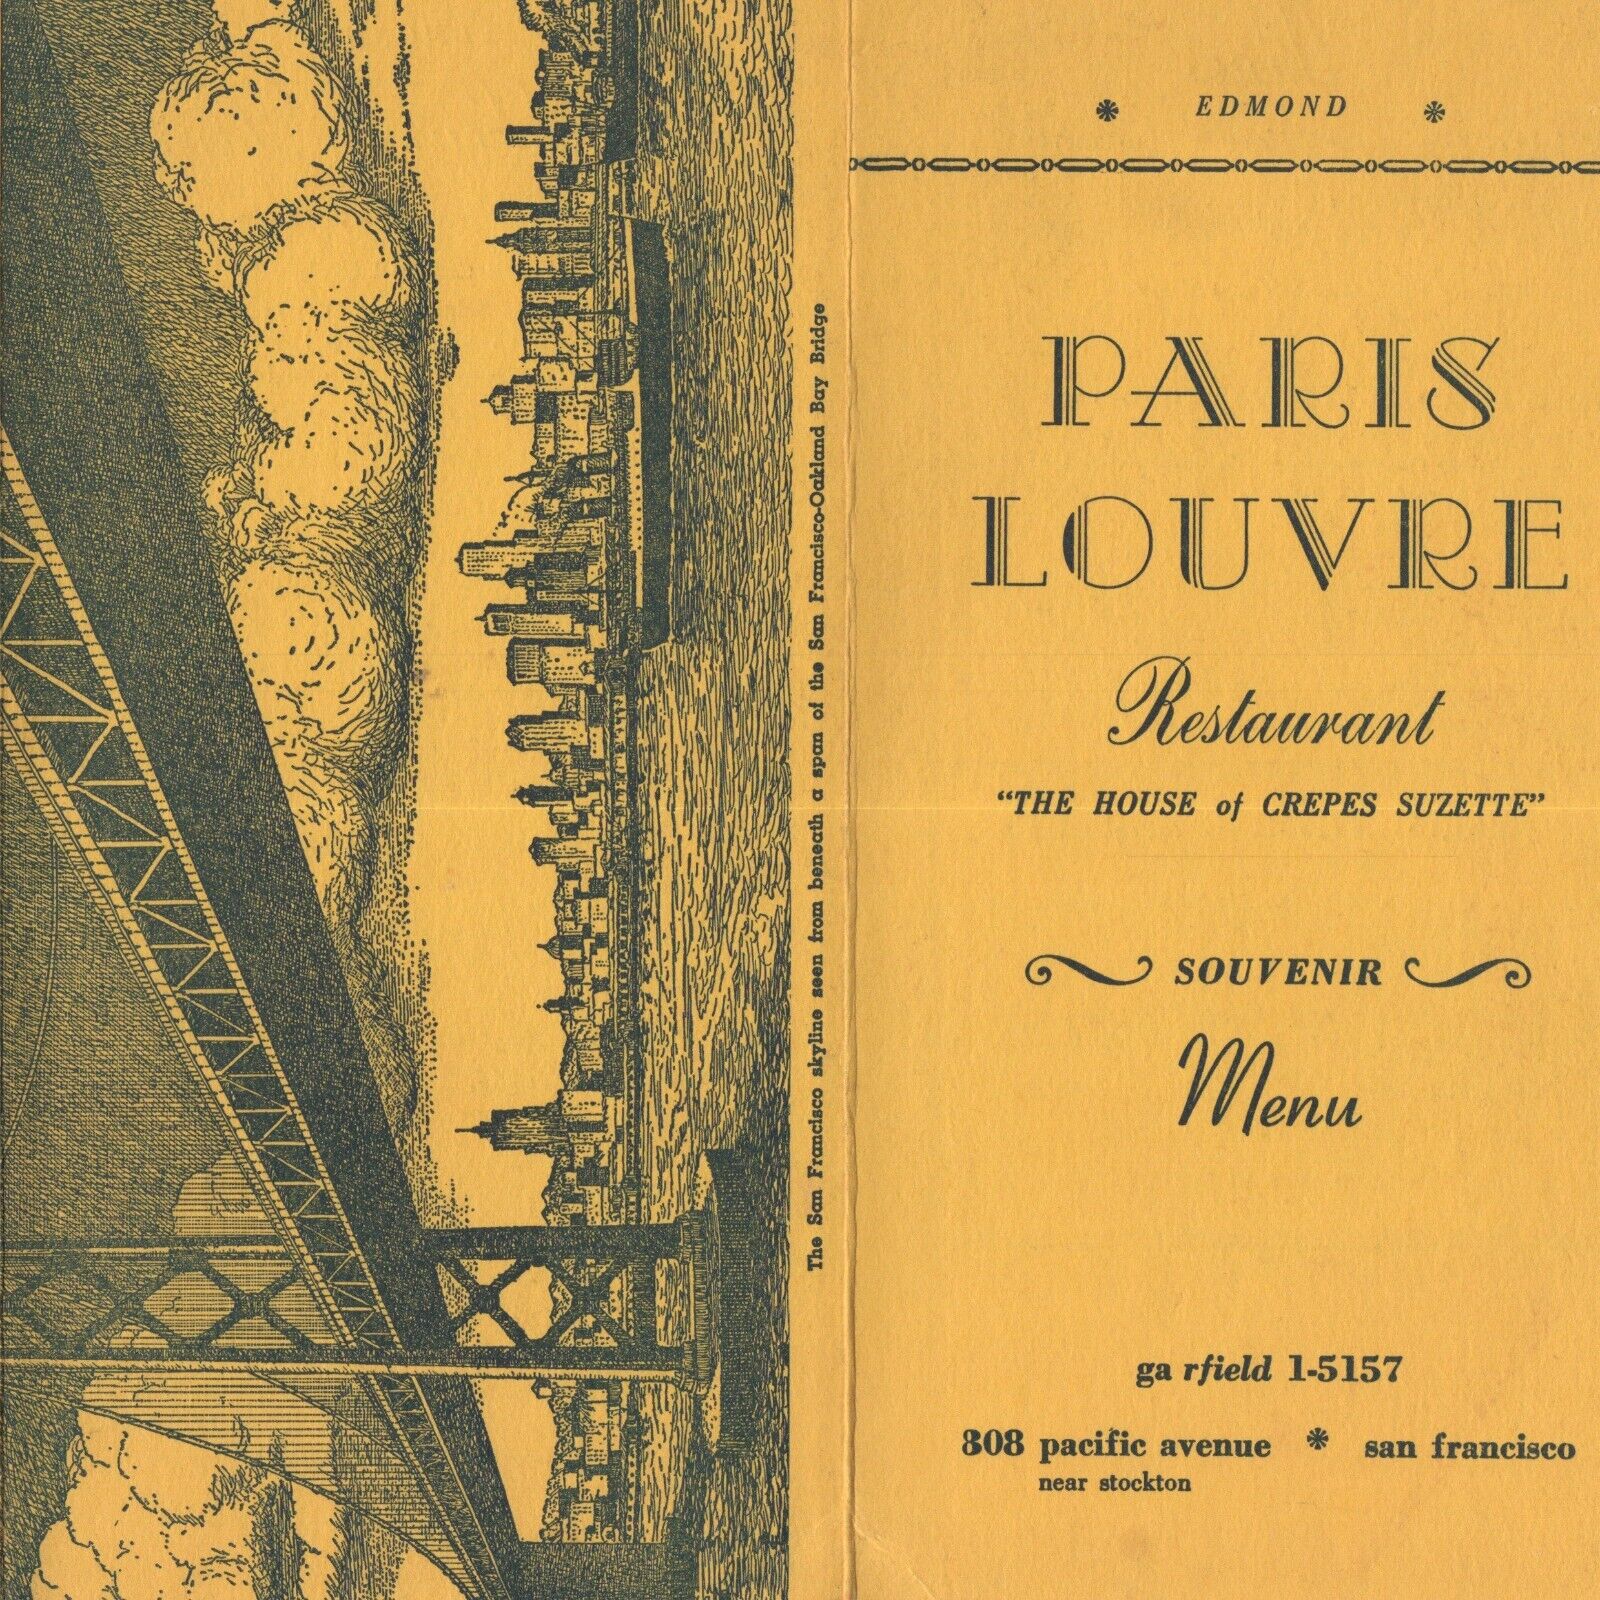 1950s Paris Louvre House of Crepes Suzette Menu 808 Pacific Avenue San Francisco